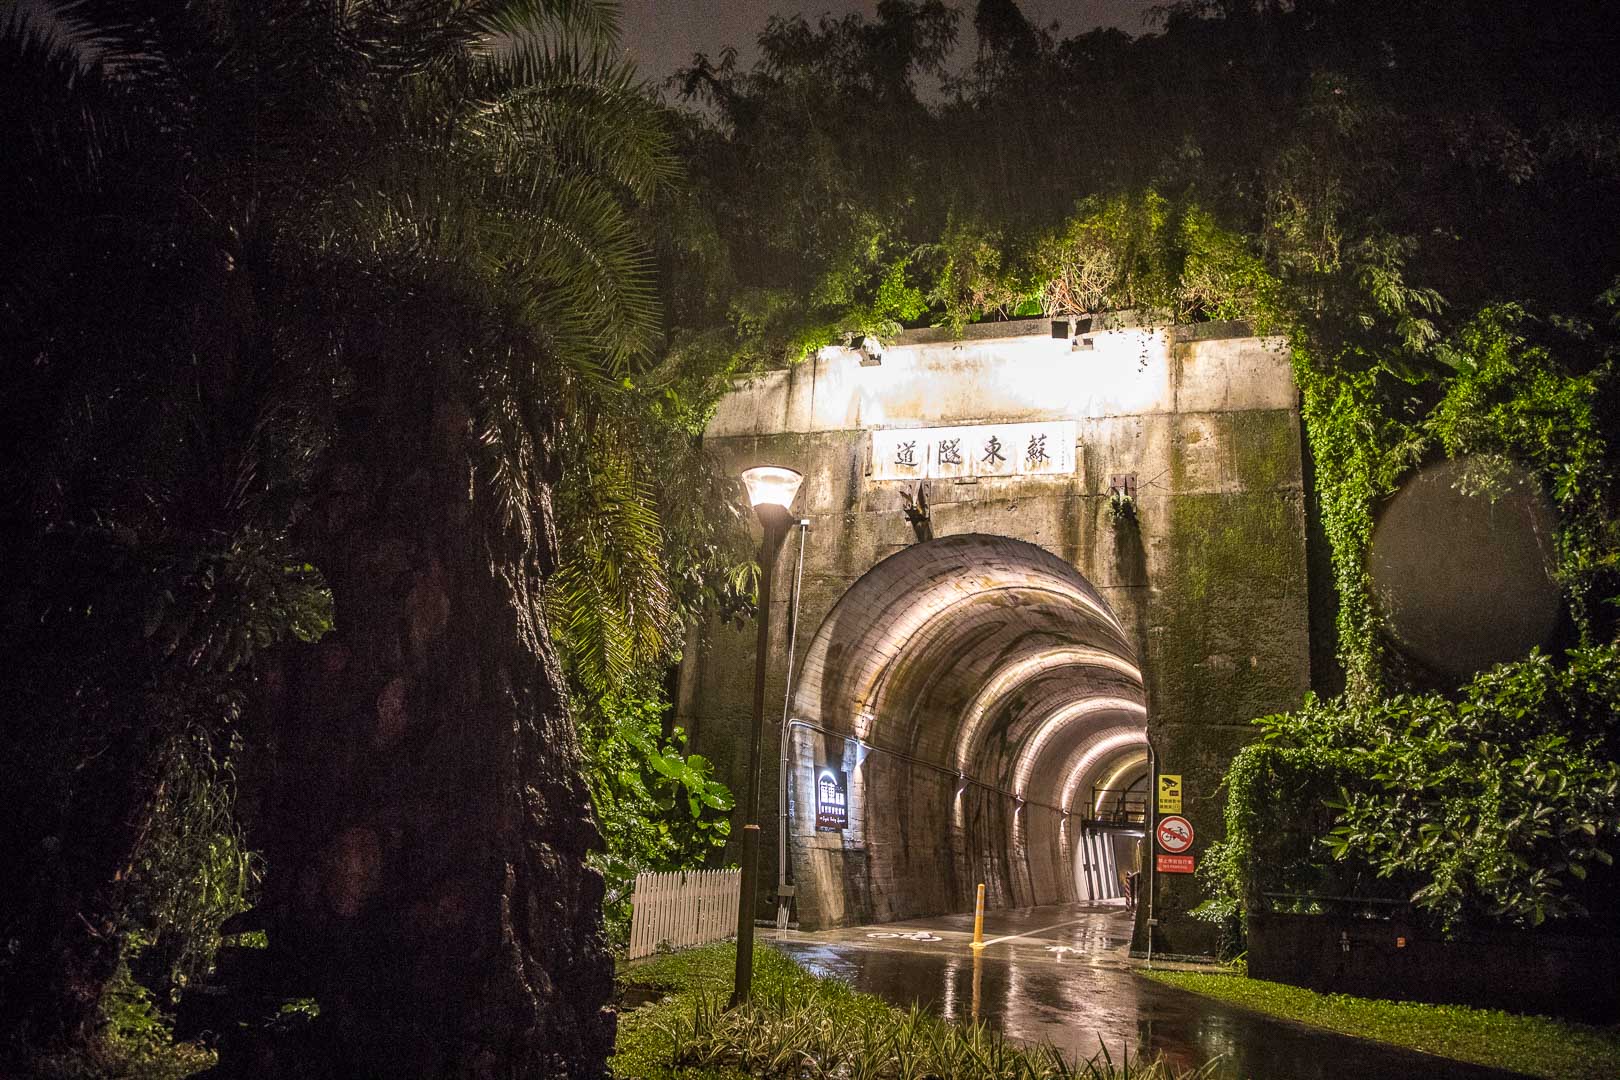 宜蘭蘇東隧道3,宜蘭3D海底彩繪隧道,宜蘭景點,蘇澳景點,蘇東隧道3D海底彩繪隧道,蘇東隧道,3D海底彩繪隧道